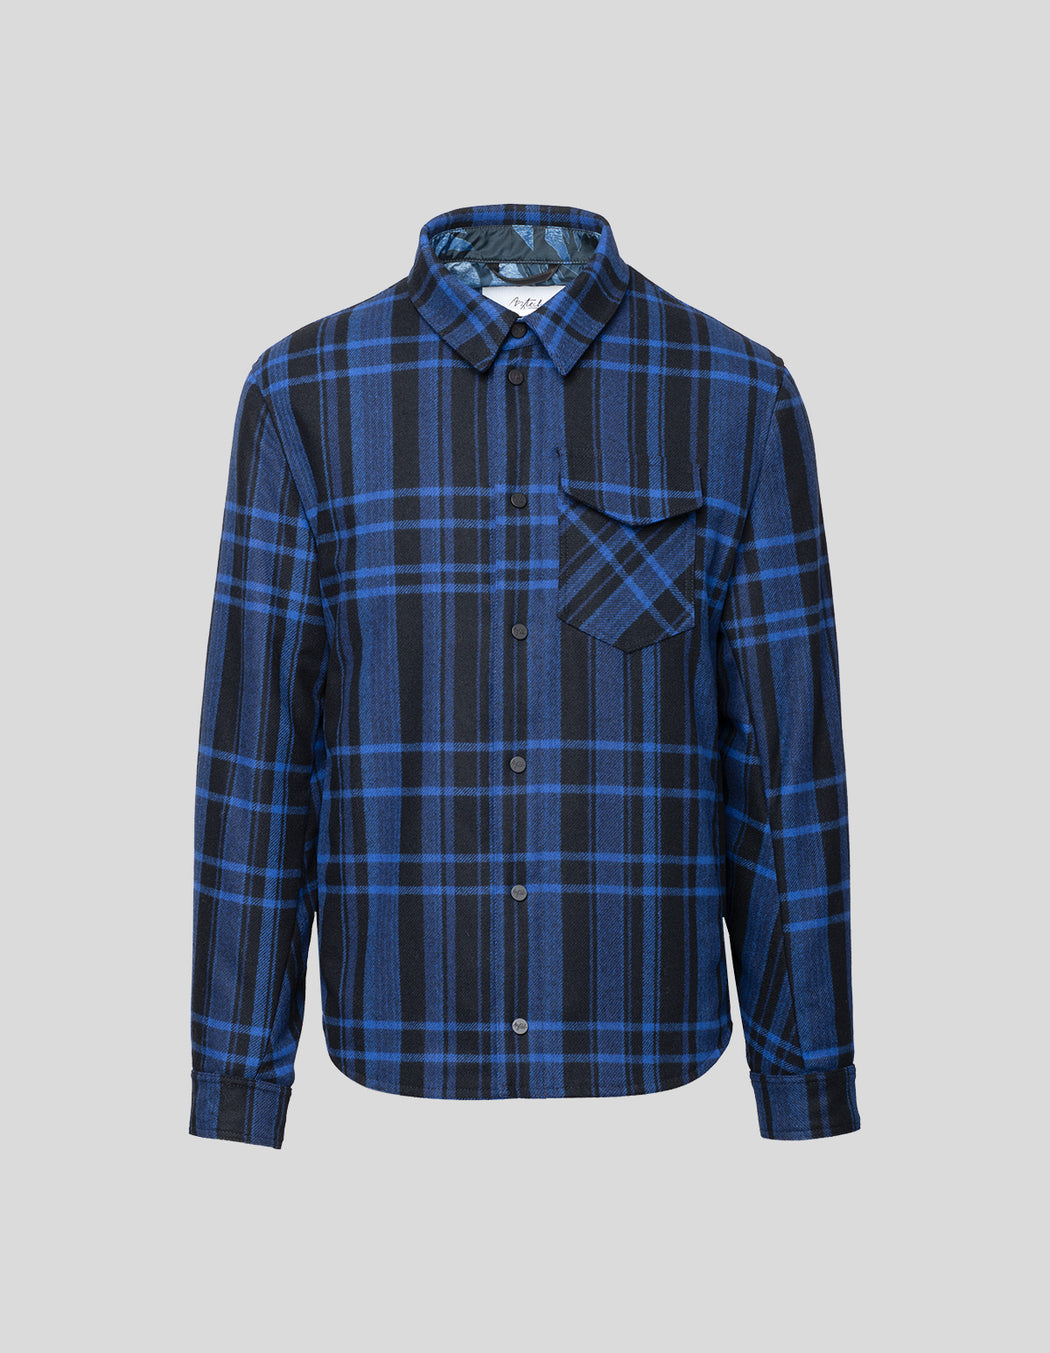 Lenado Cashmere Shirt Jacket